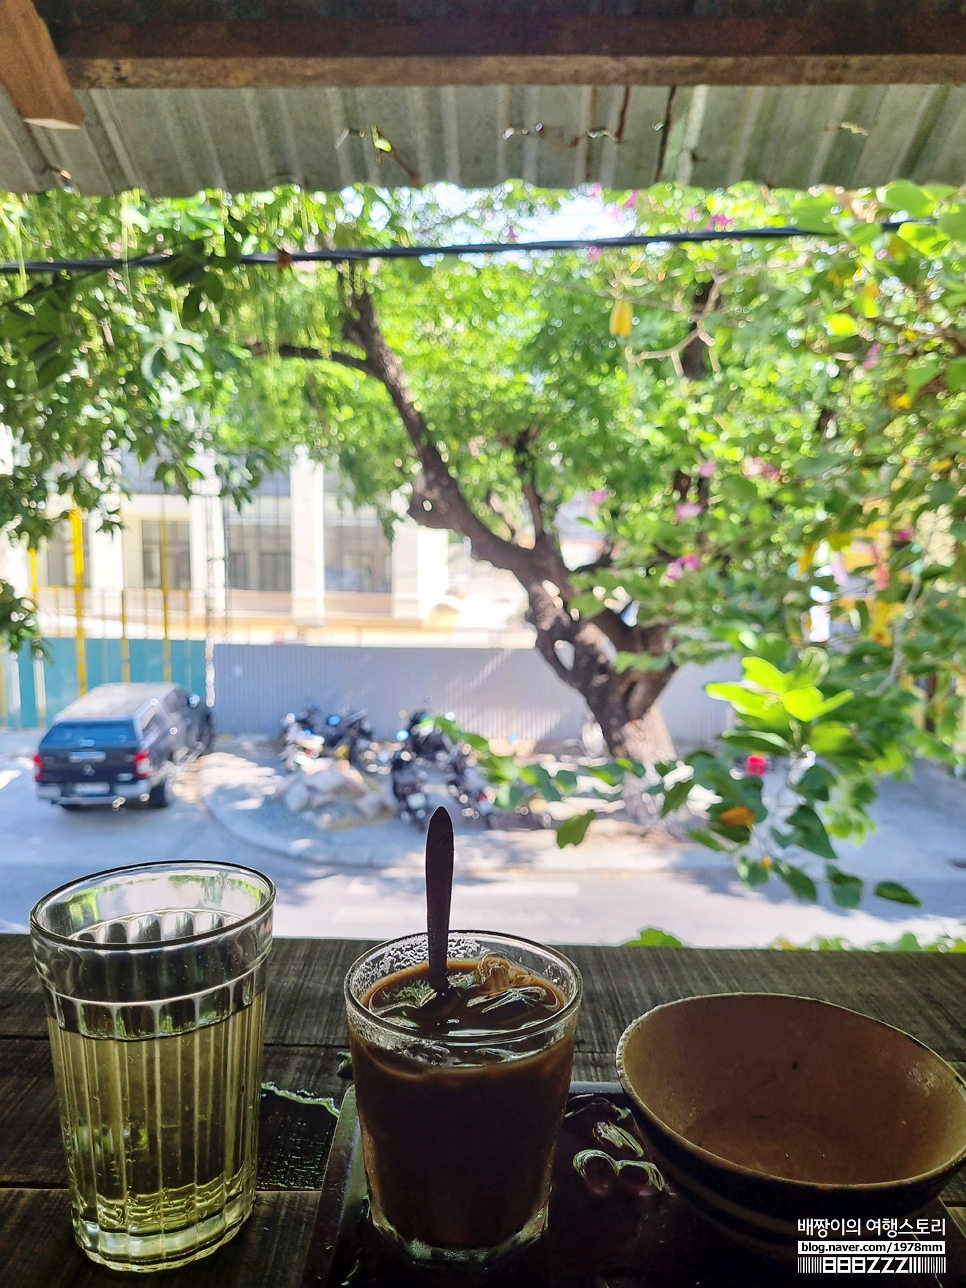 다낭한달살기 산장 다락방 컨셉 카페 막내삼촌 커피숍 베트남자유여행